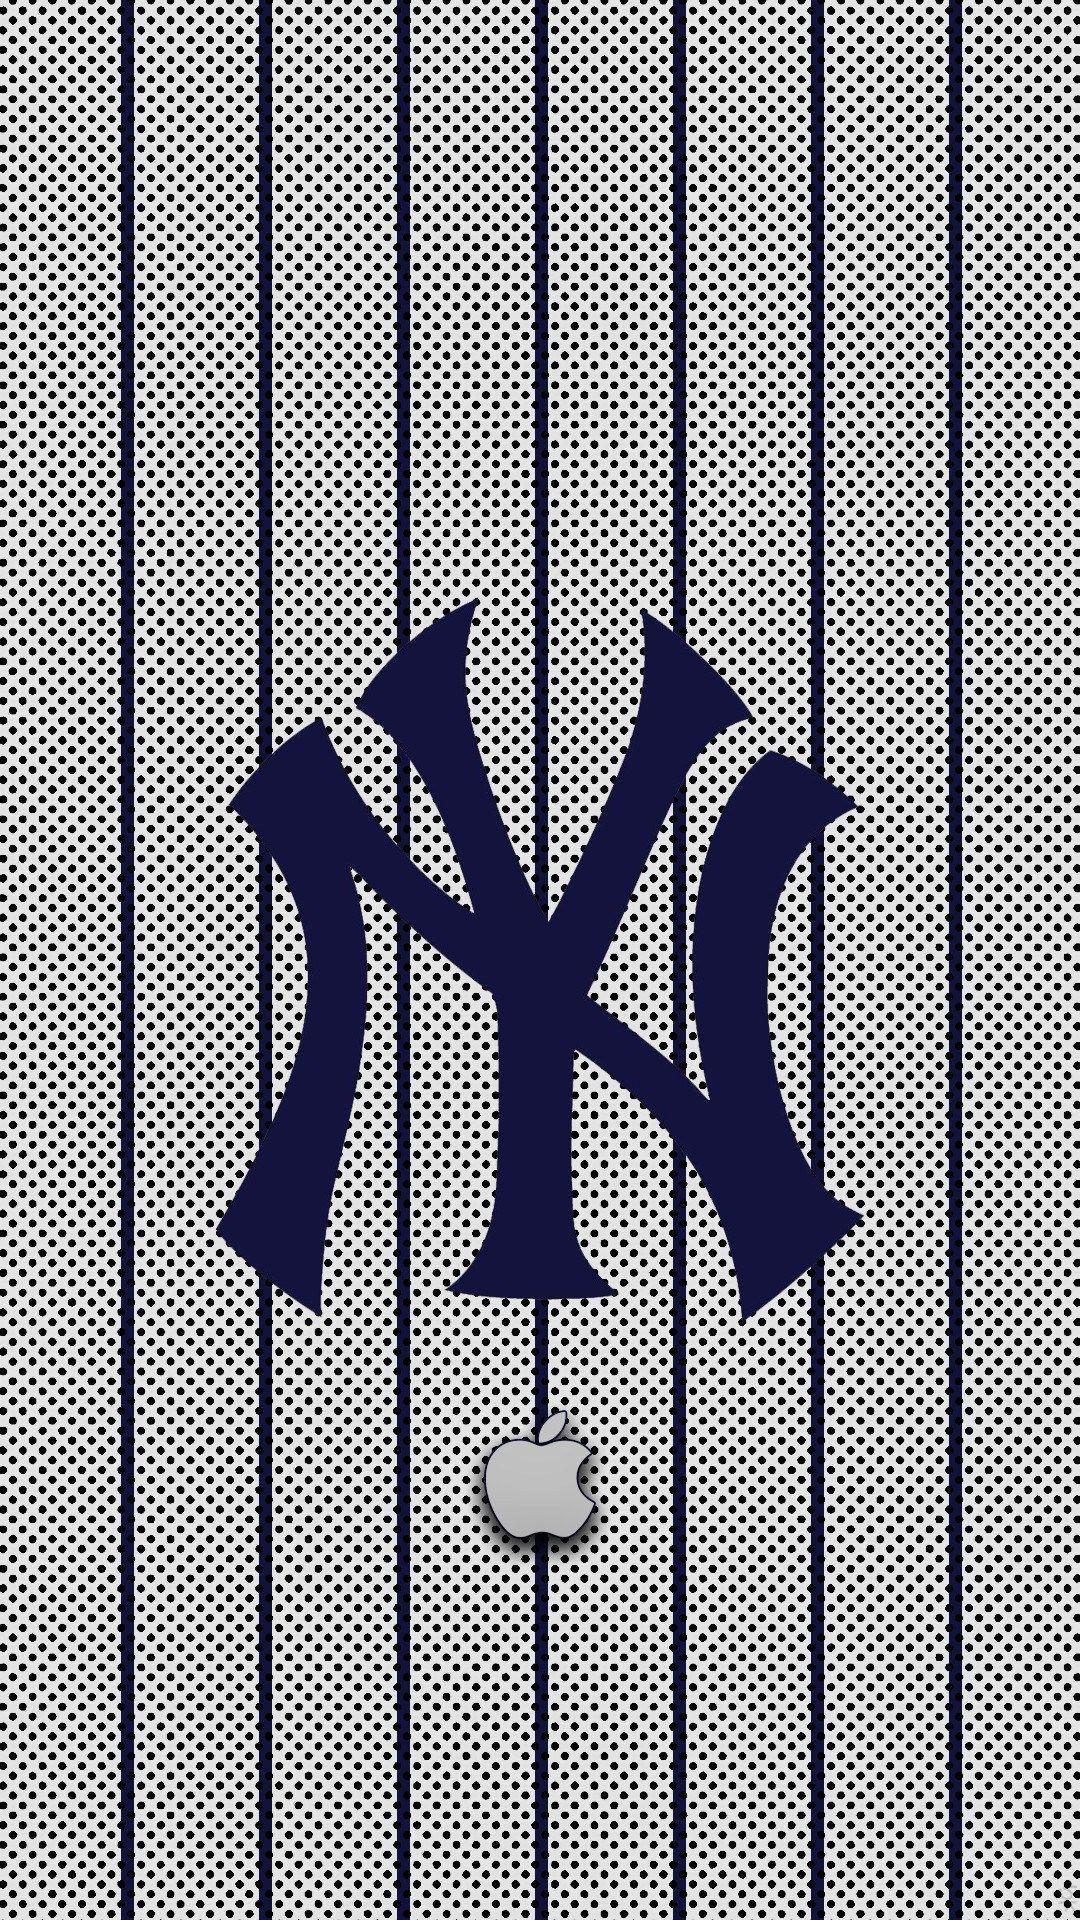 New York Yankees Logo Wallpapers - Top ...